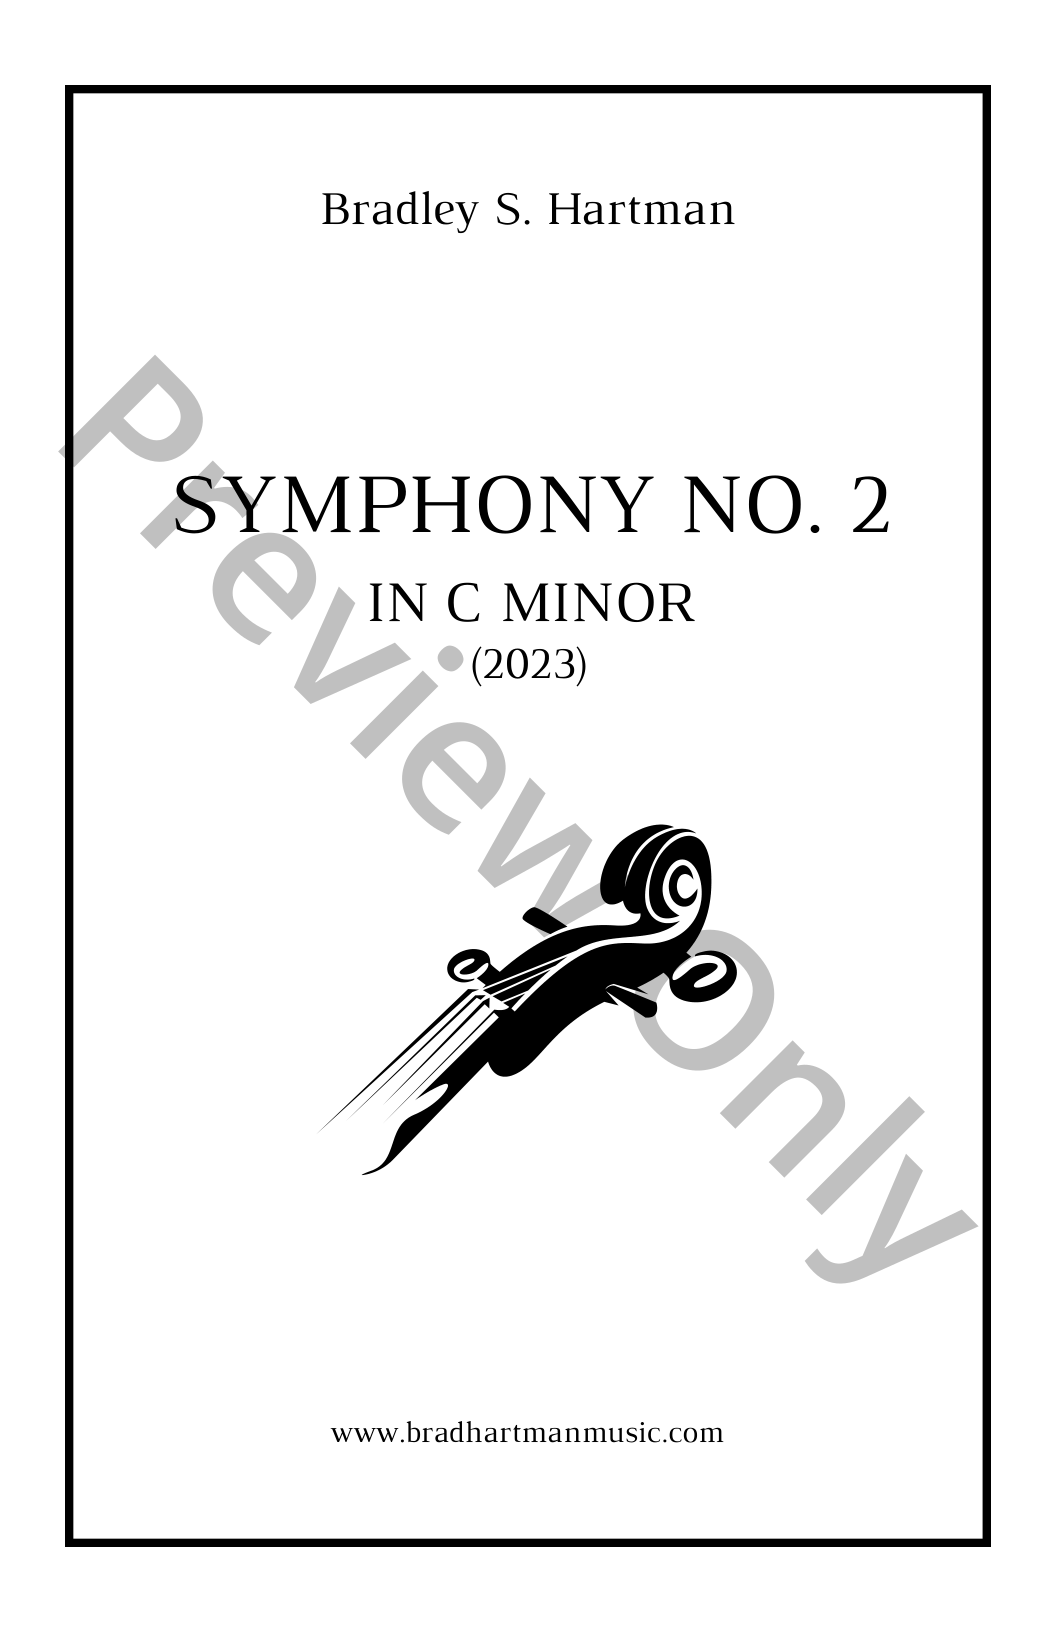 Symphony No. 2 in C minor P.O.D